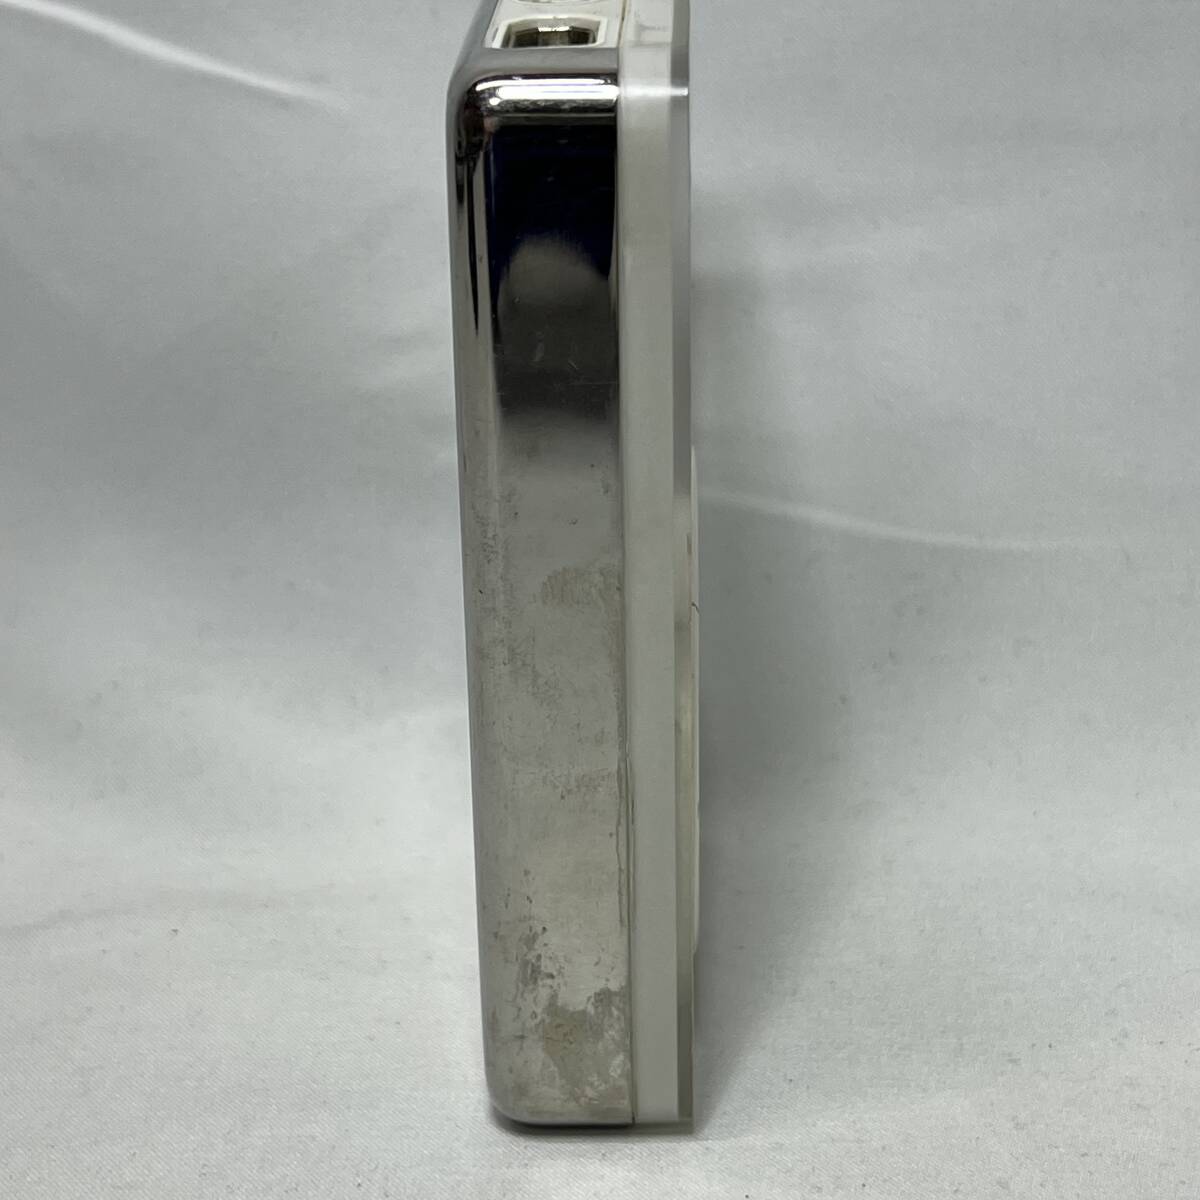 か043 初代 iPod APPLE M8541 10GB 第1世代 アップルの画像2